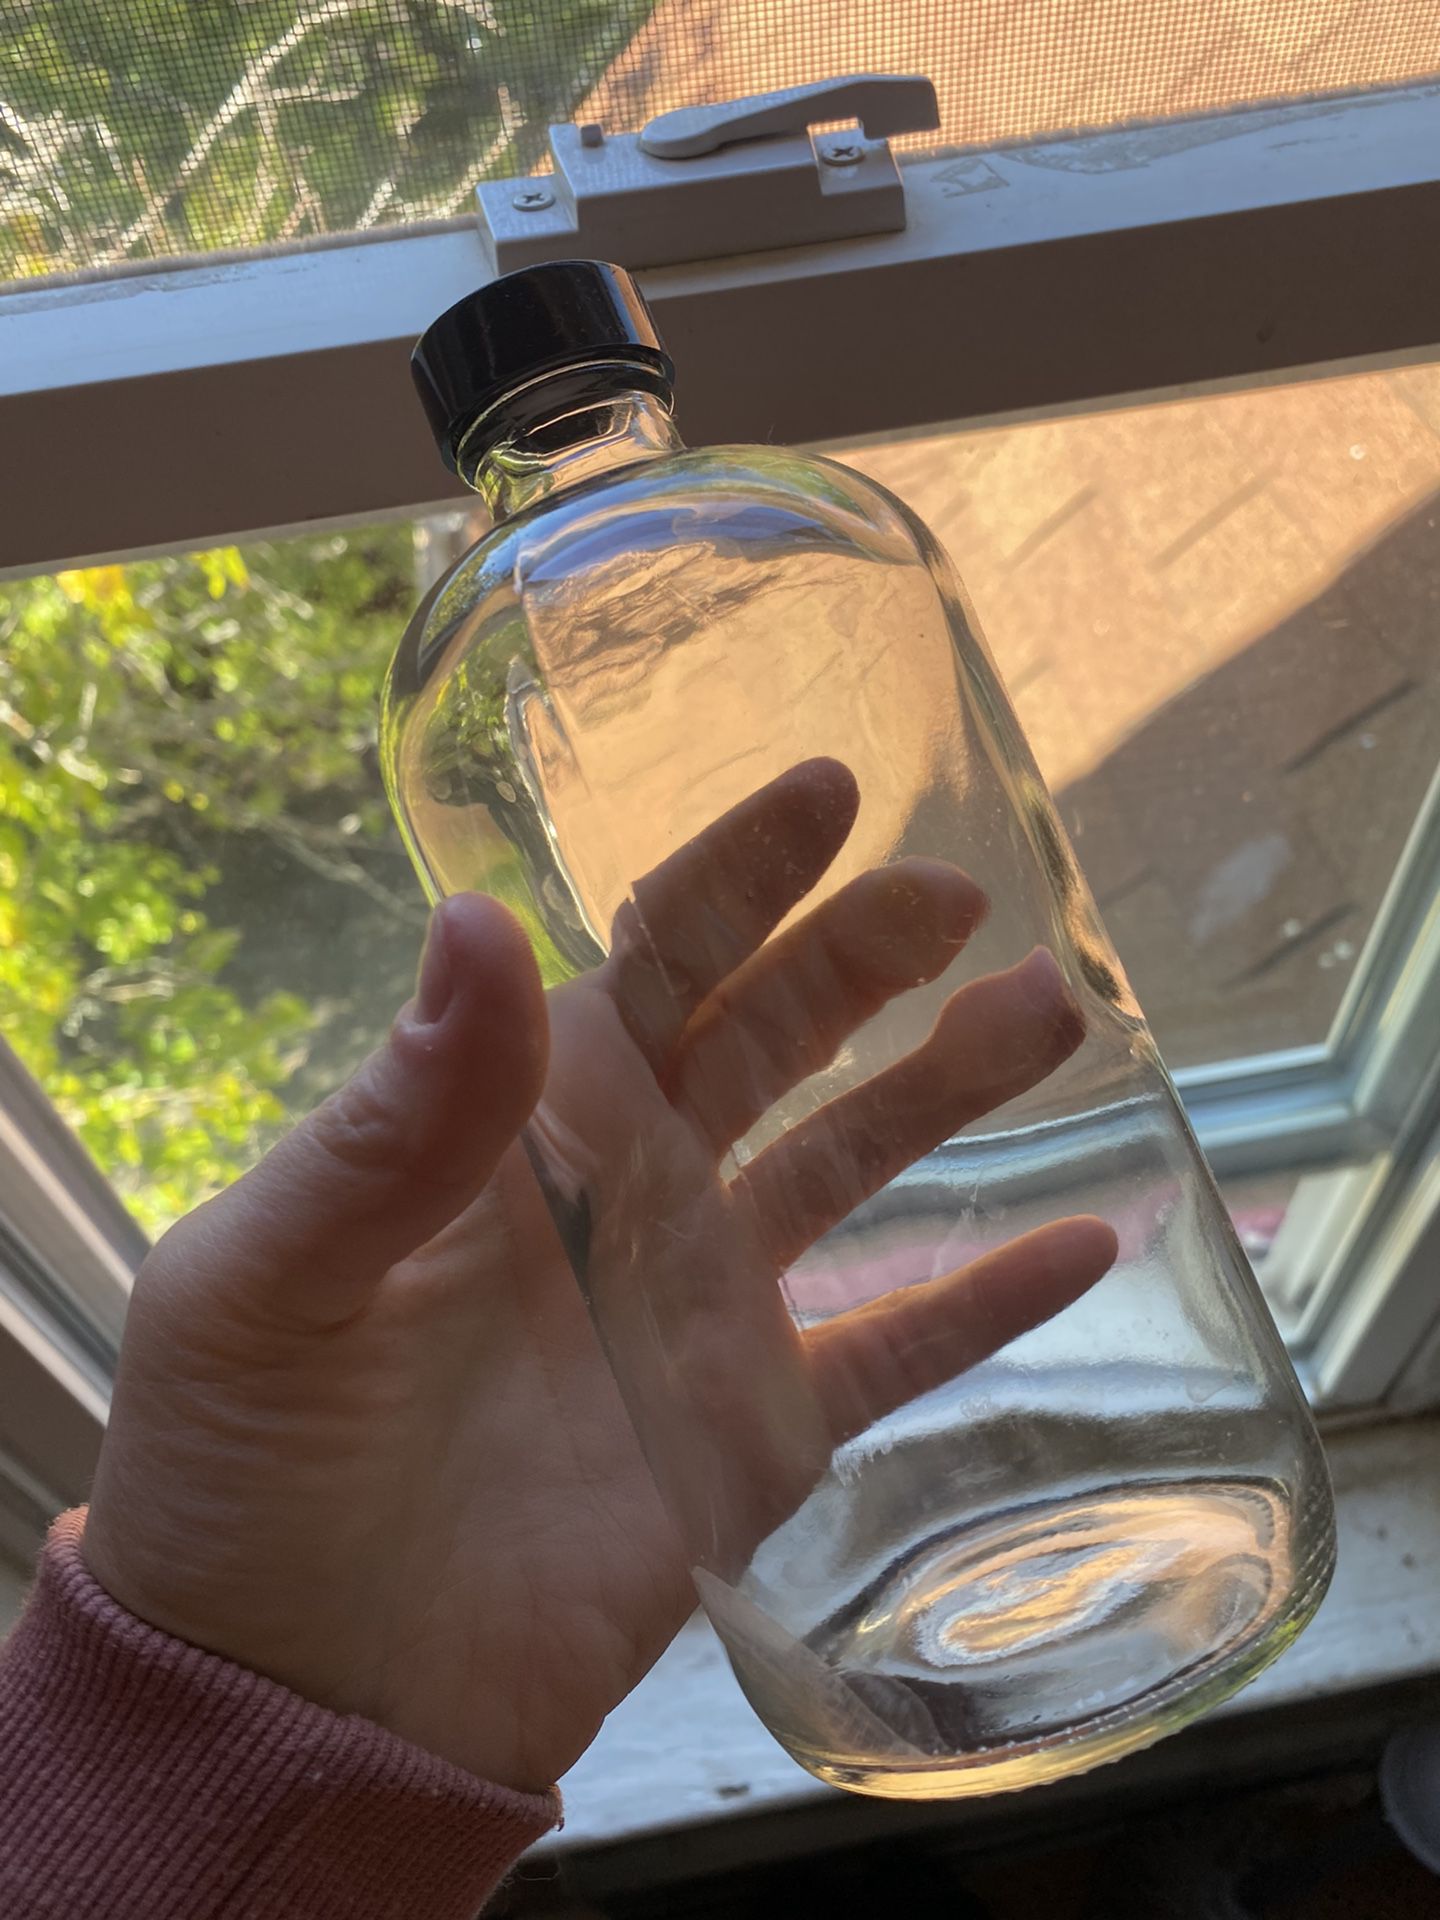 Glass Bottles 